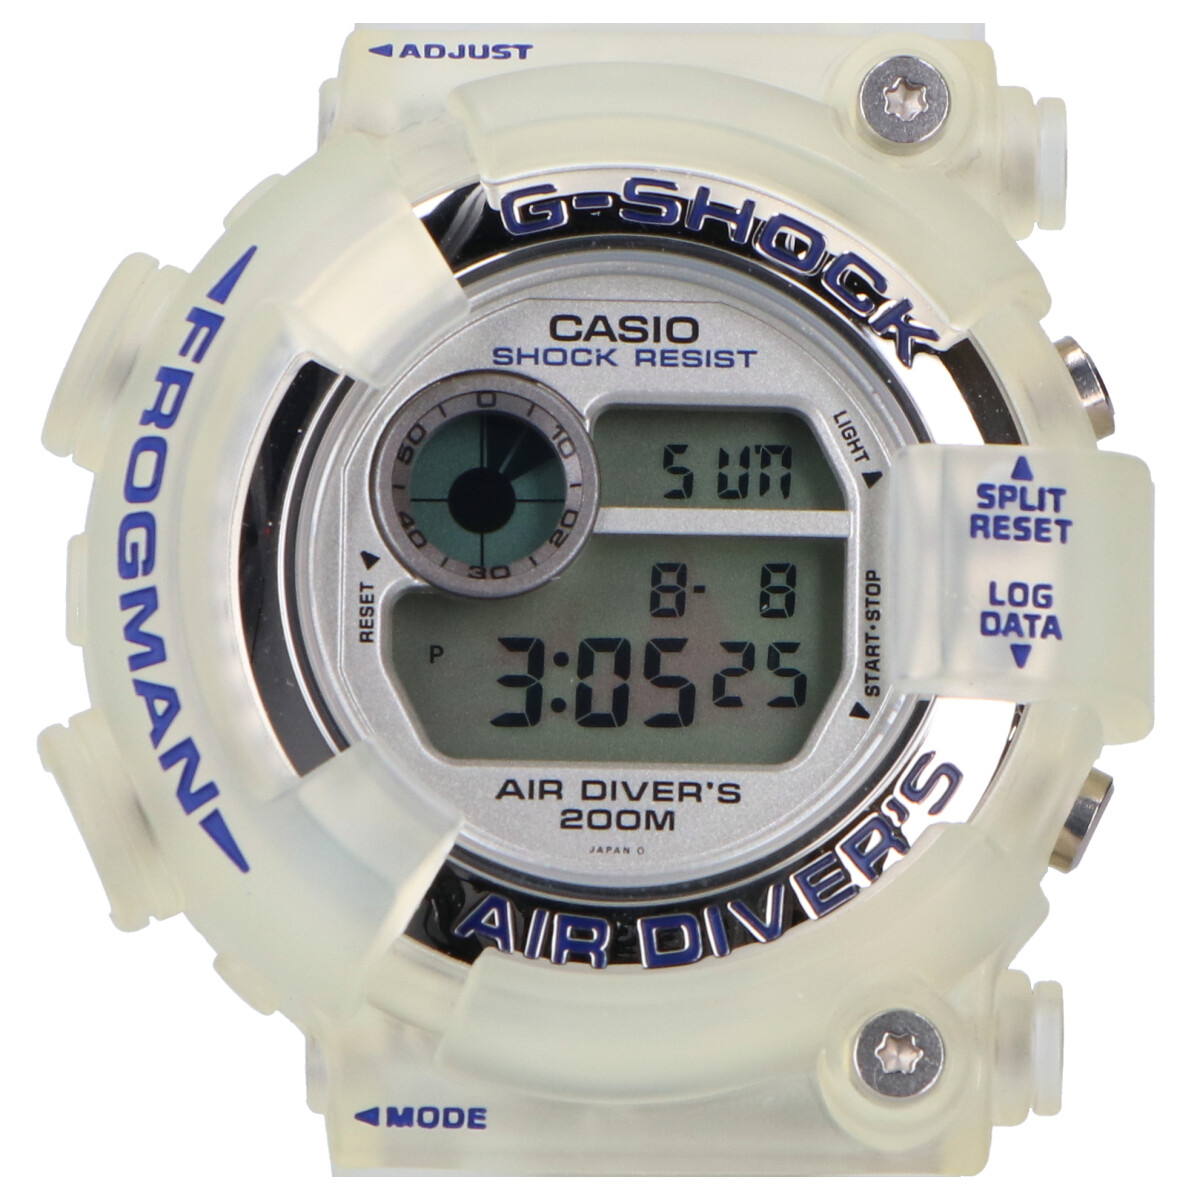 ジーショックのDW-8250WC-7BT フロッグマン W.C.C.S.世界サンゴ礁保護協会オフィシャルモデル デジタル時計の買取実績です。